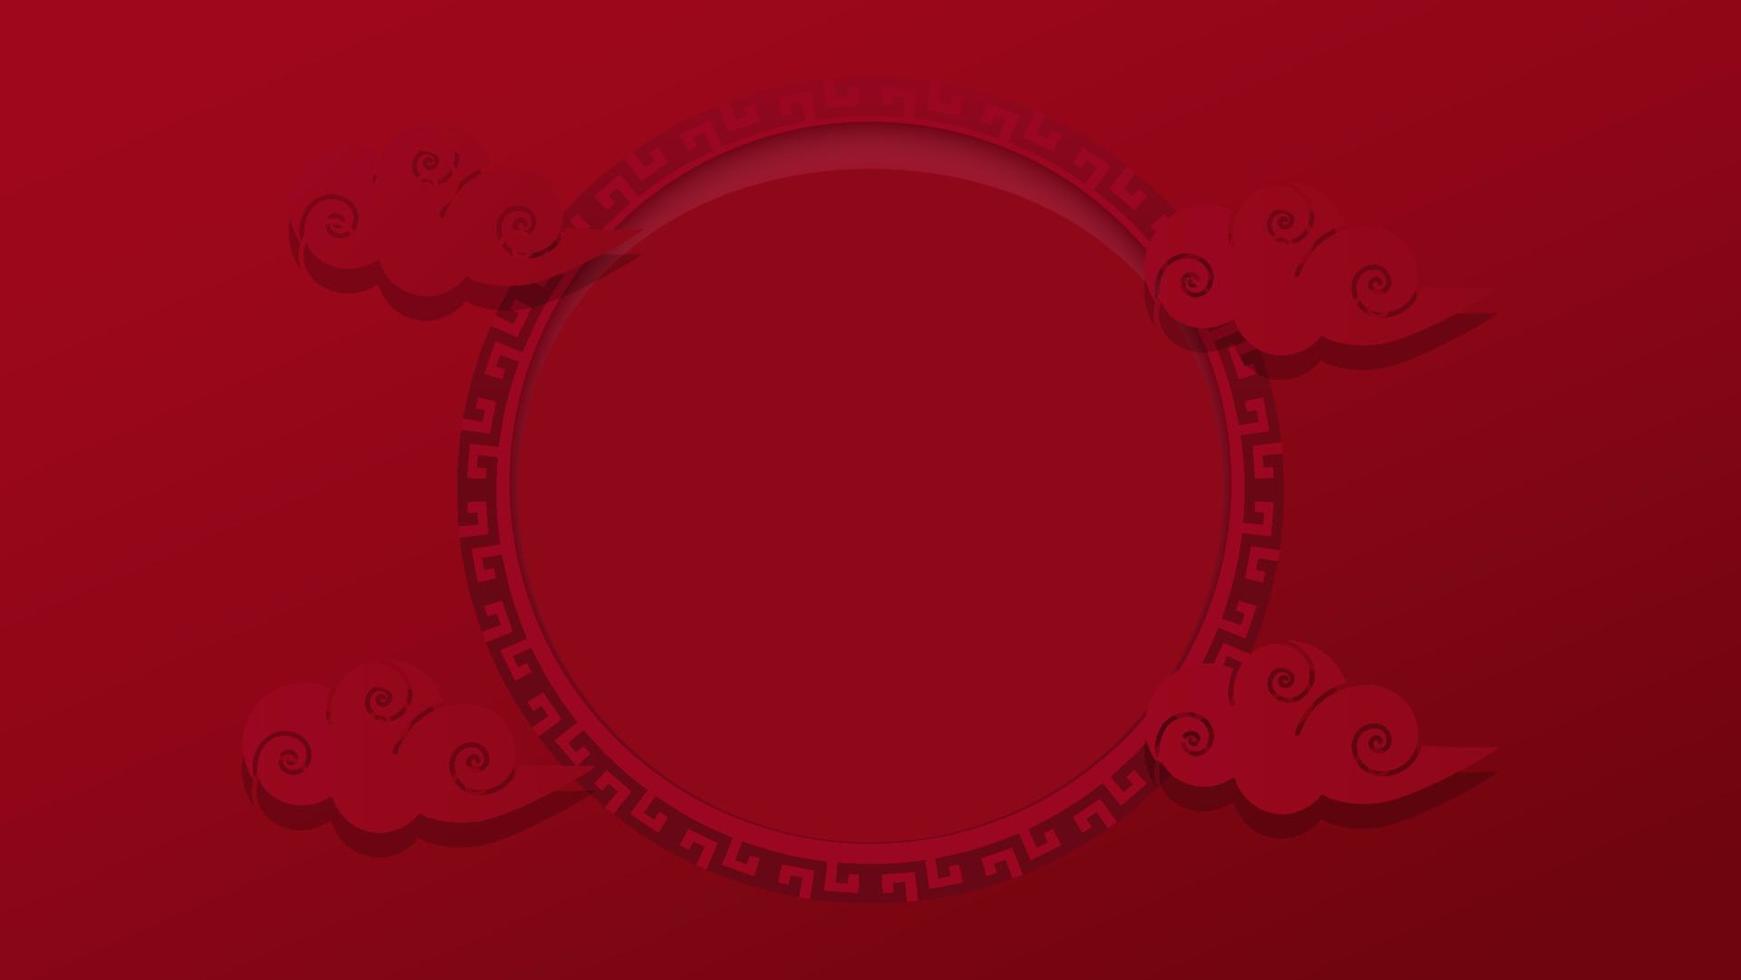 gott nytt kinesiskt år. röd festlig mönsterbakgrund med cirkelram och dekorativa moln vektor